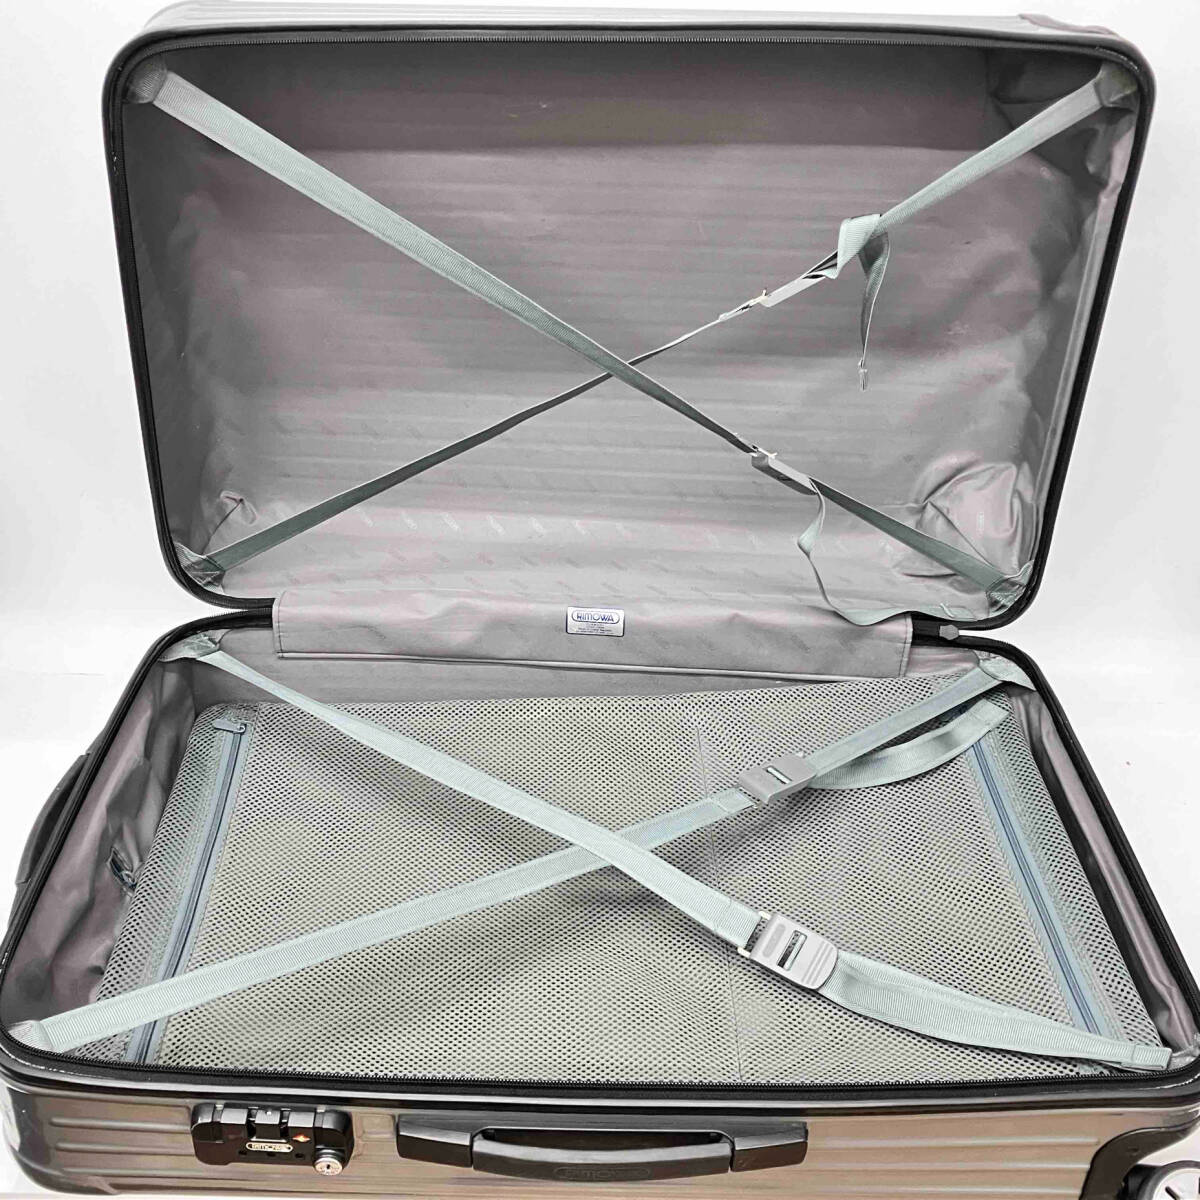 rimowa リモワ スーツケース キャリーケース トラベル キャリー 旅行バッグ ※状態考慮 店舗受取可_画像5